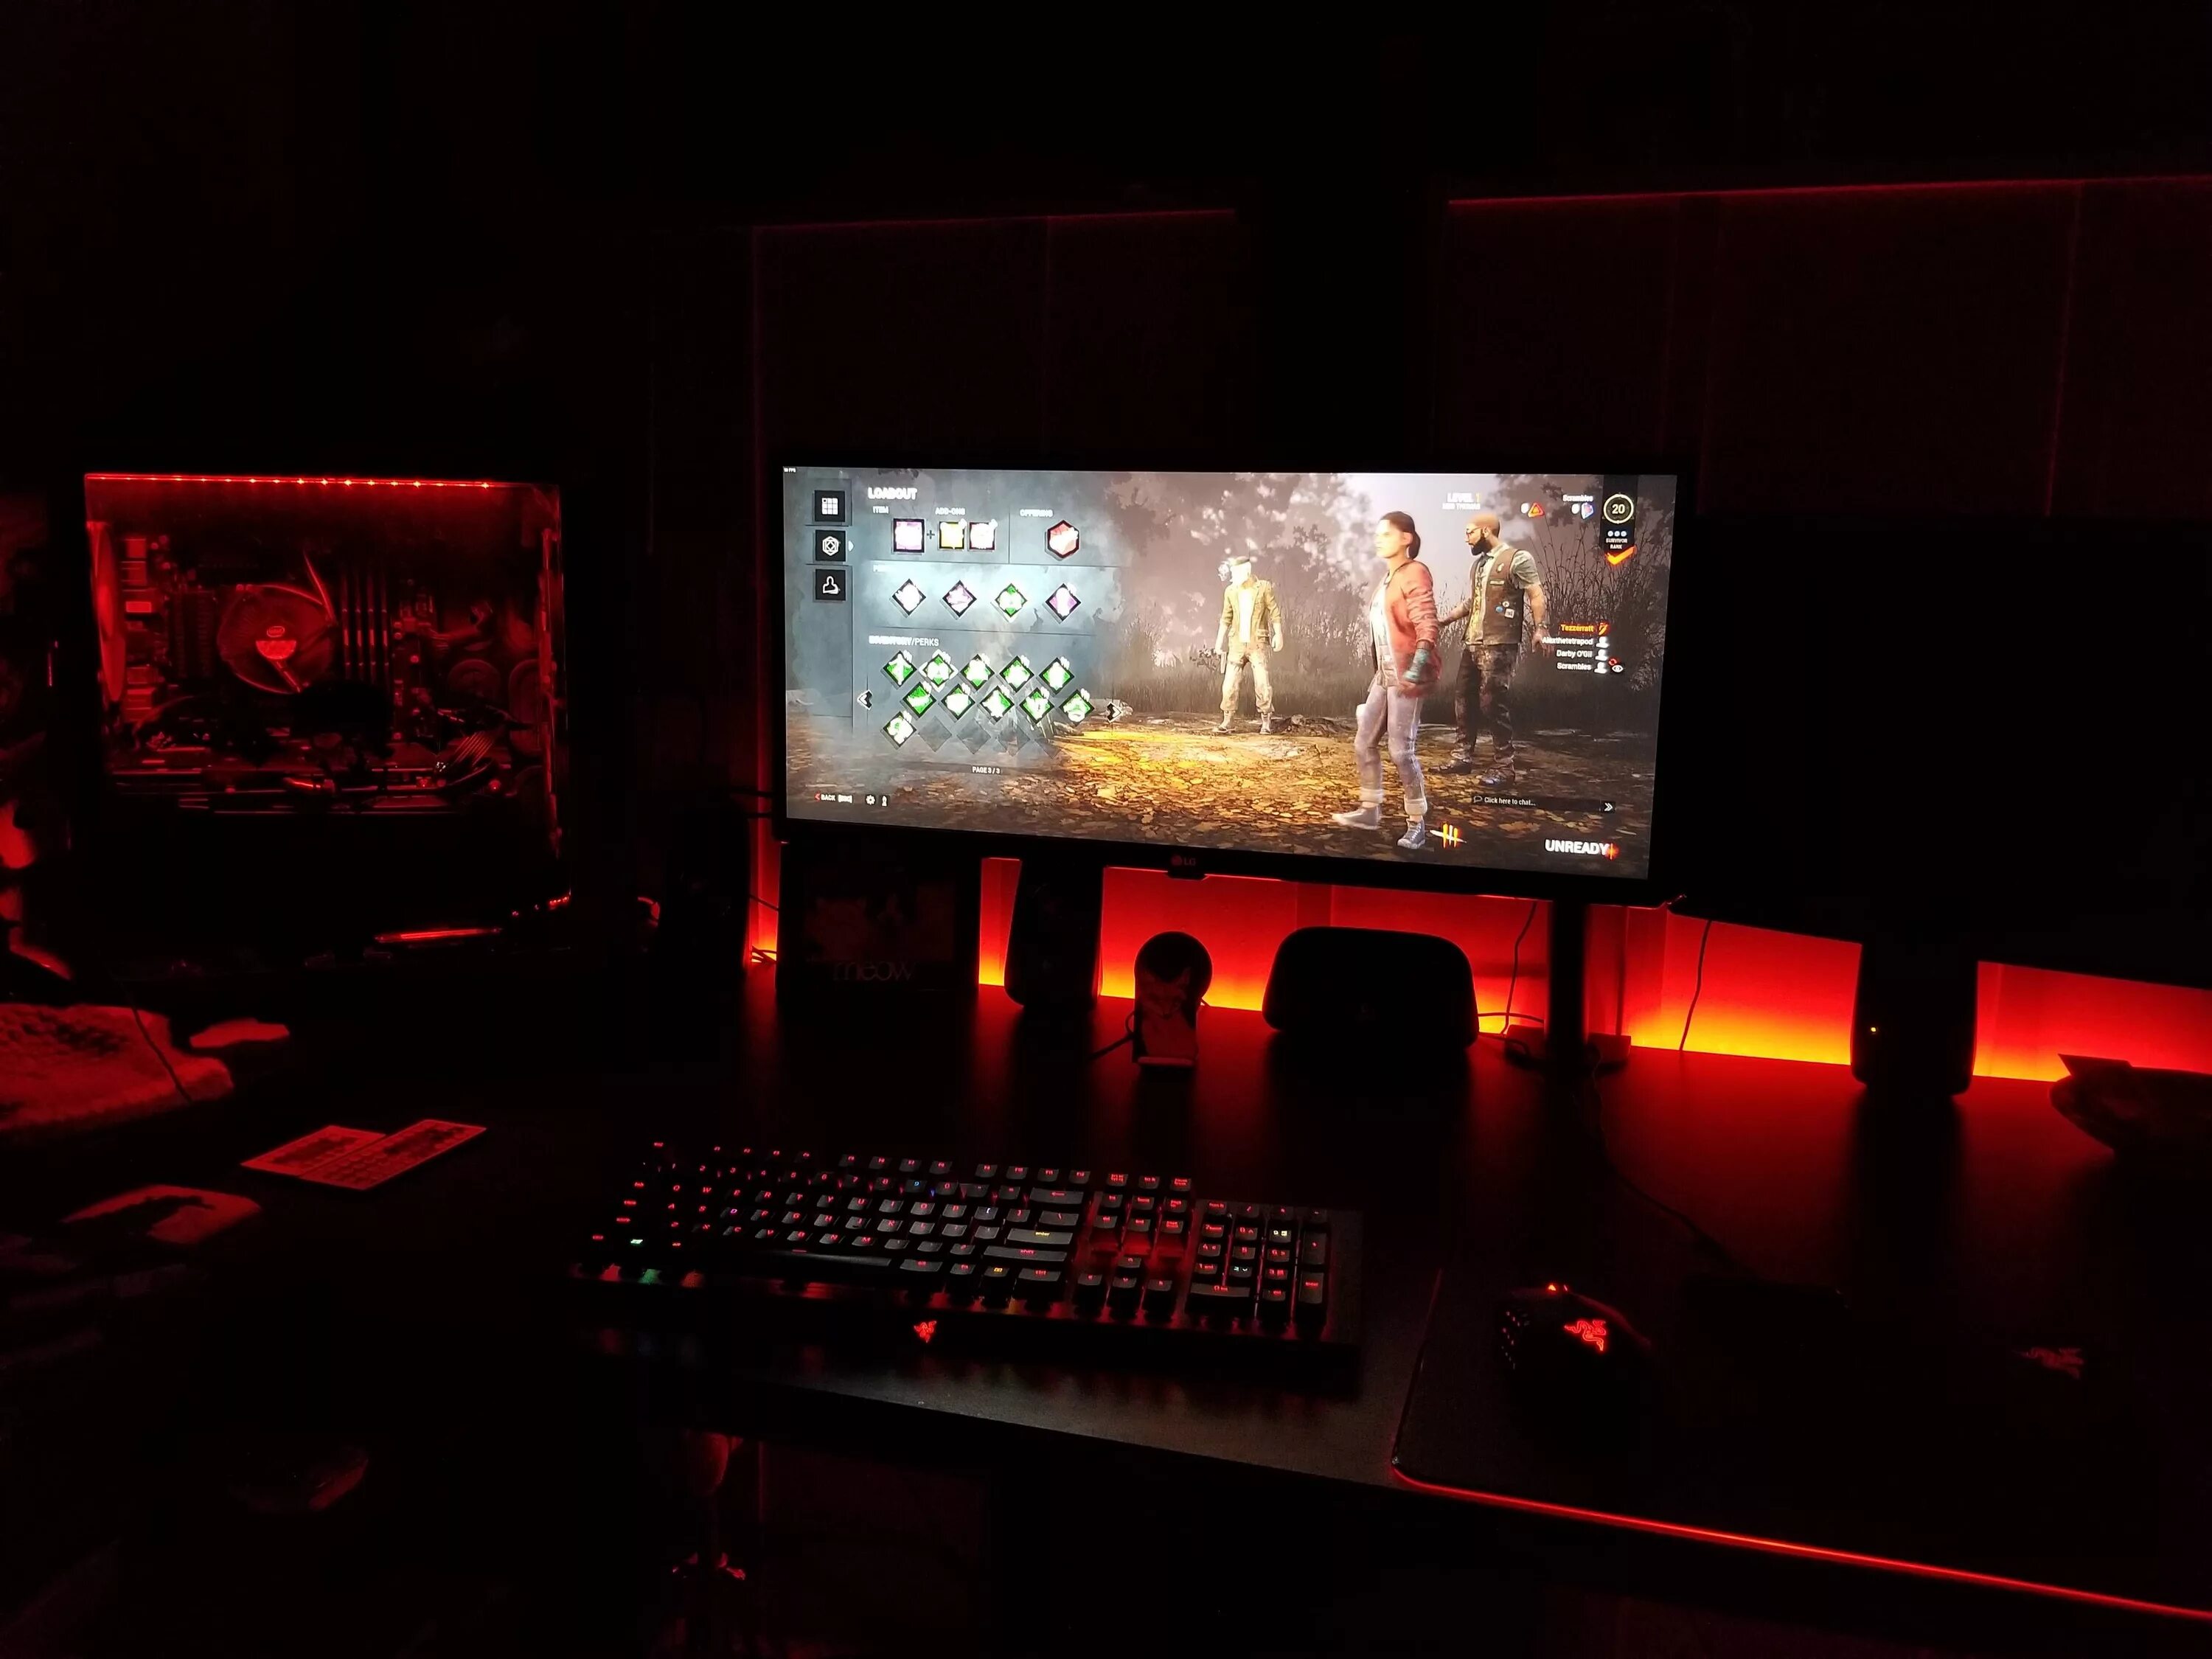 Night gamer full. Компьютер ночью. Игровой компьютер ночью. Игровое место. Компьютер в темноте.